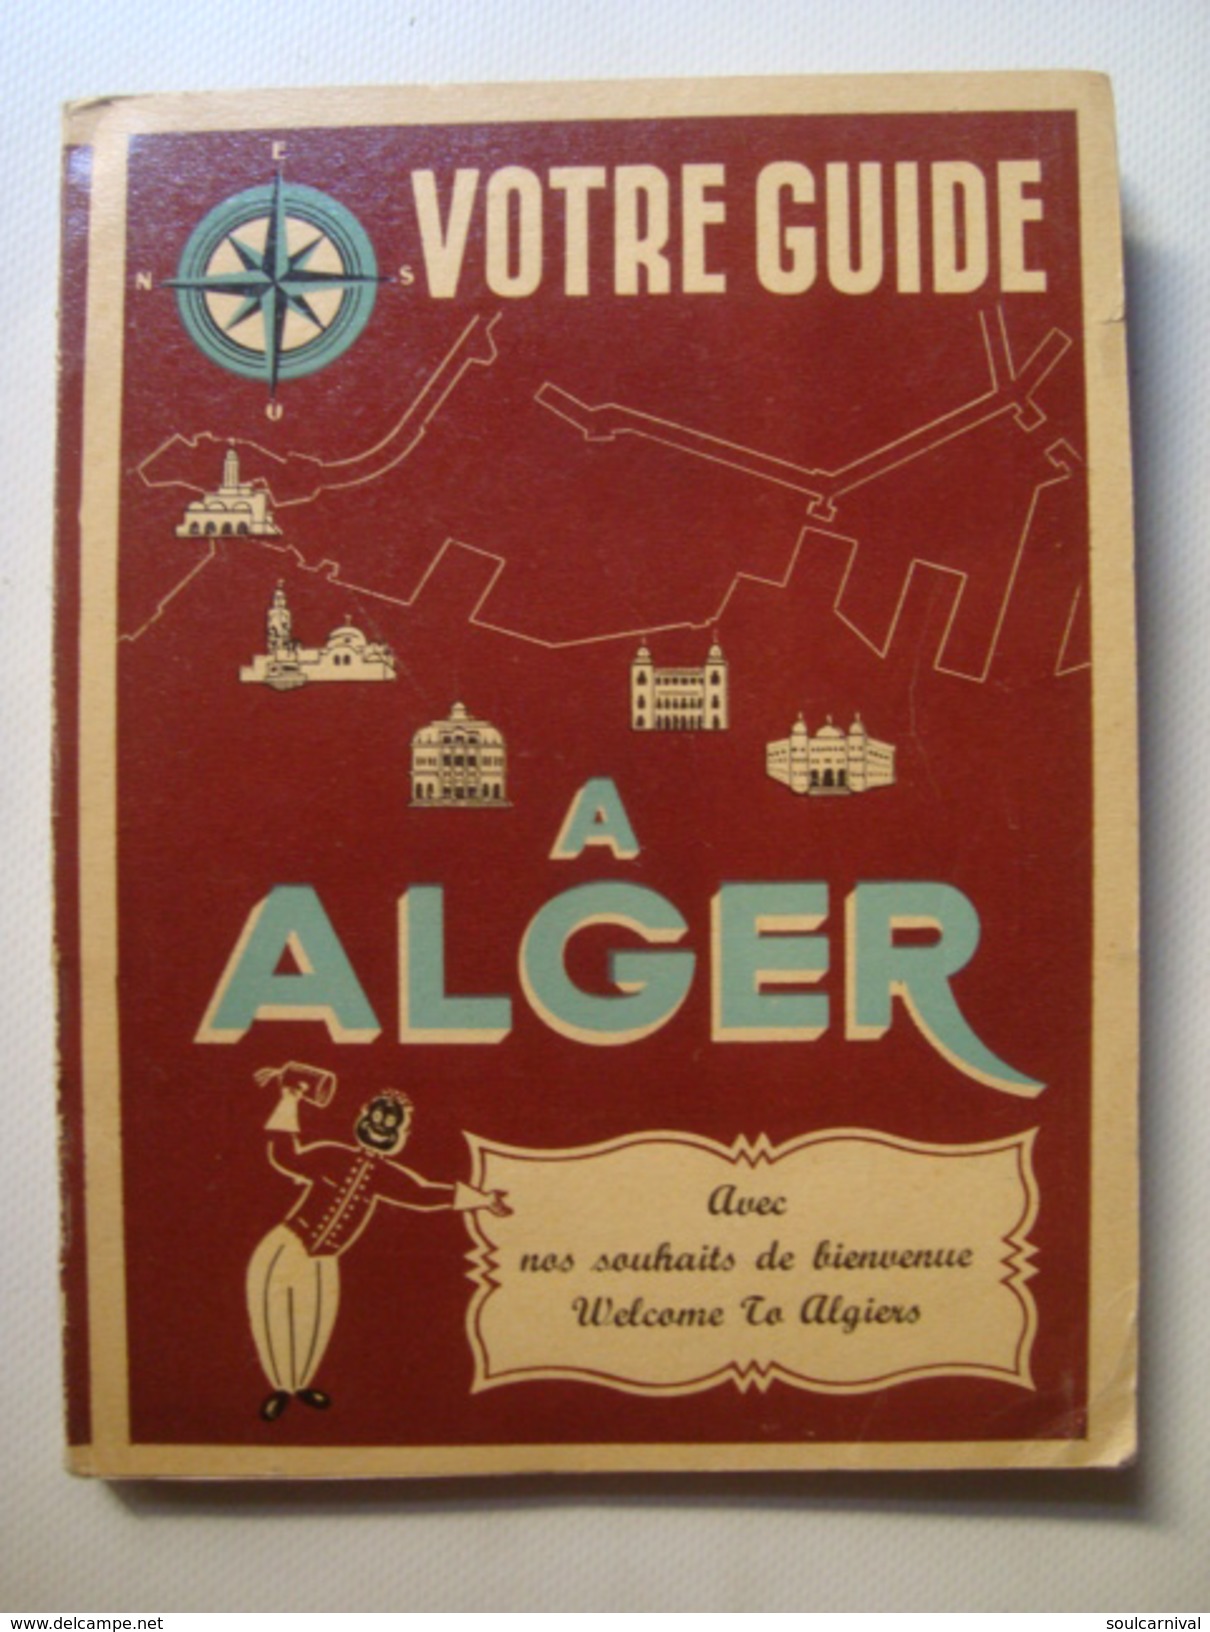 VOTRE GUIDE À ALGER, AVEC NOS SOUHAITS DE BIENVENUE / WELCOME TO ALGIERS - ALGERIA, PUBLIMONDE 1950 APROX. VIN ALGÉRIANA - Afrique